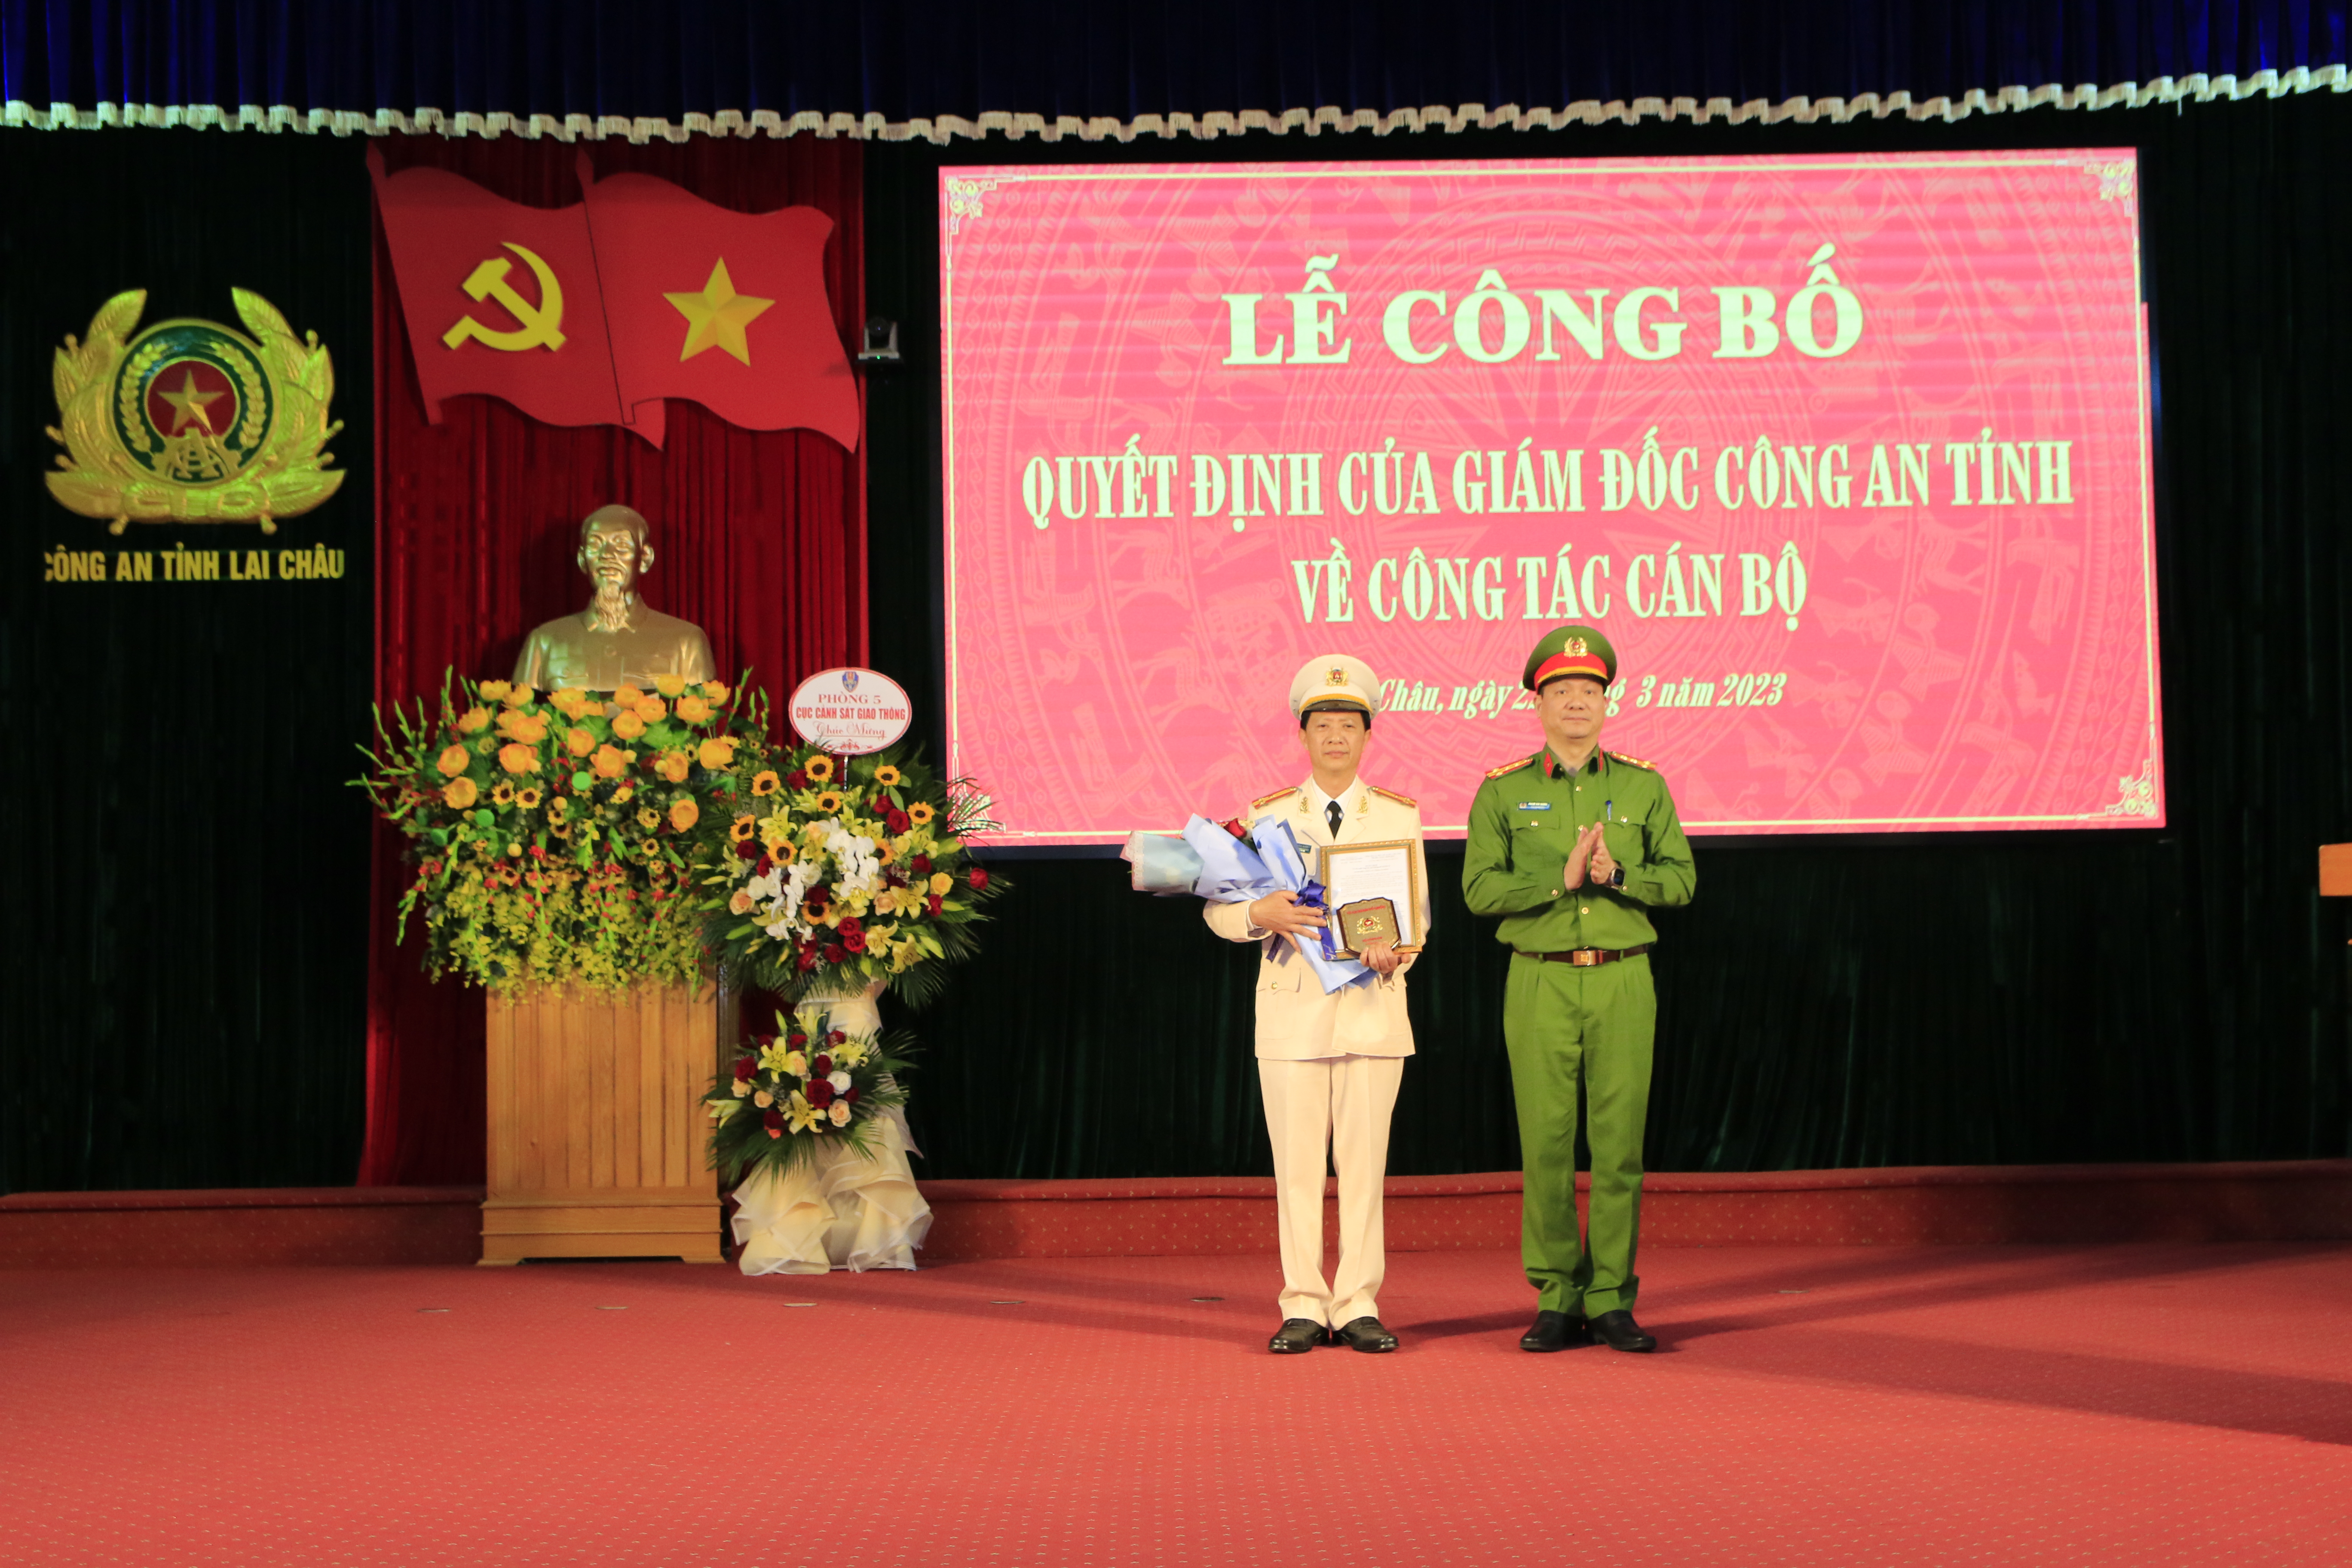 Đại tá Phạm Hải Đăng, Phó giám đốc Công an tỉnh trao quyết định và tặng hoa chúc mừng đối với đồng chí Trần Văn Biên.